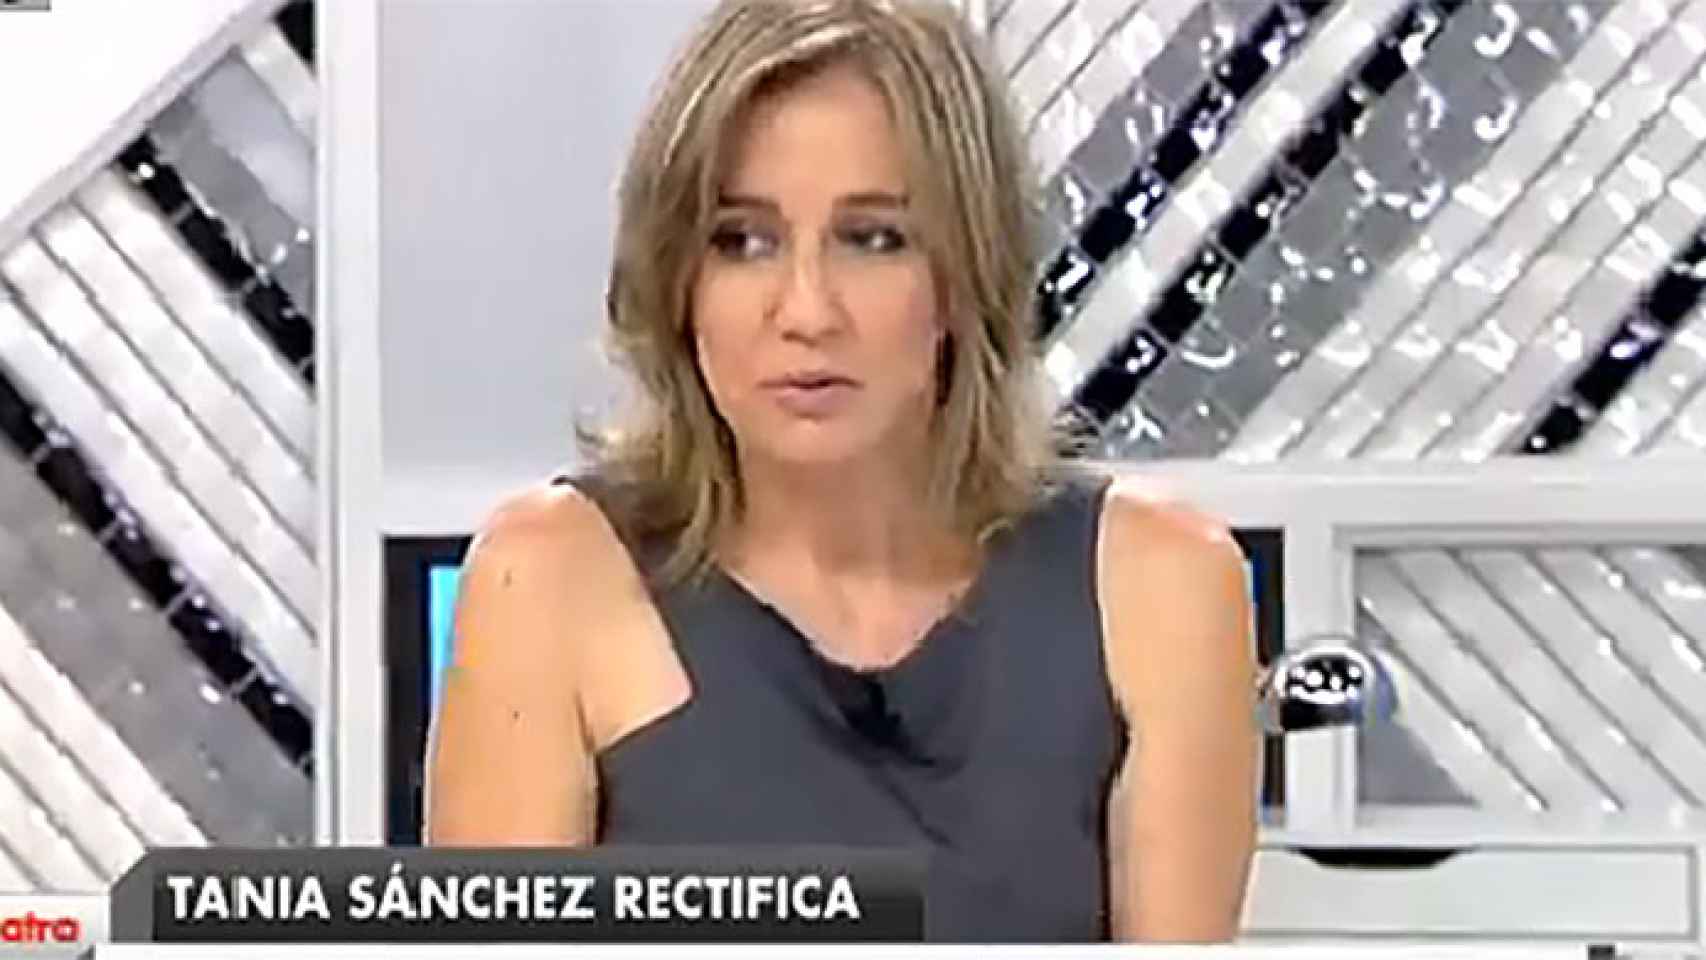 Cuatro ficha en exclusiva a Tania Sánchez hasta finales de septiembre